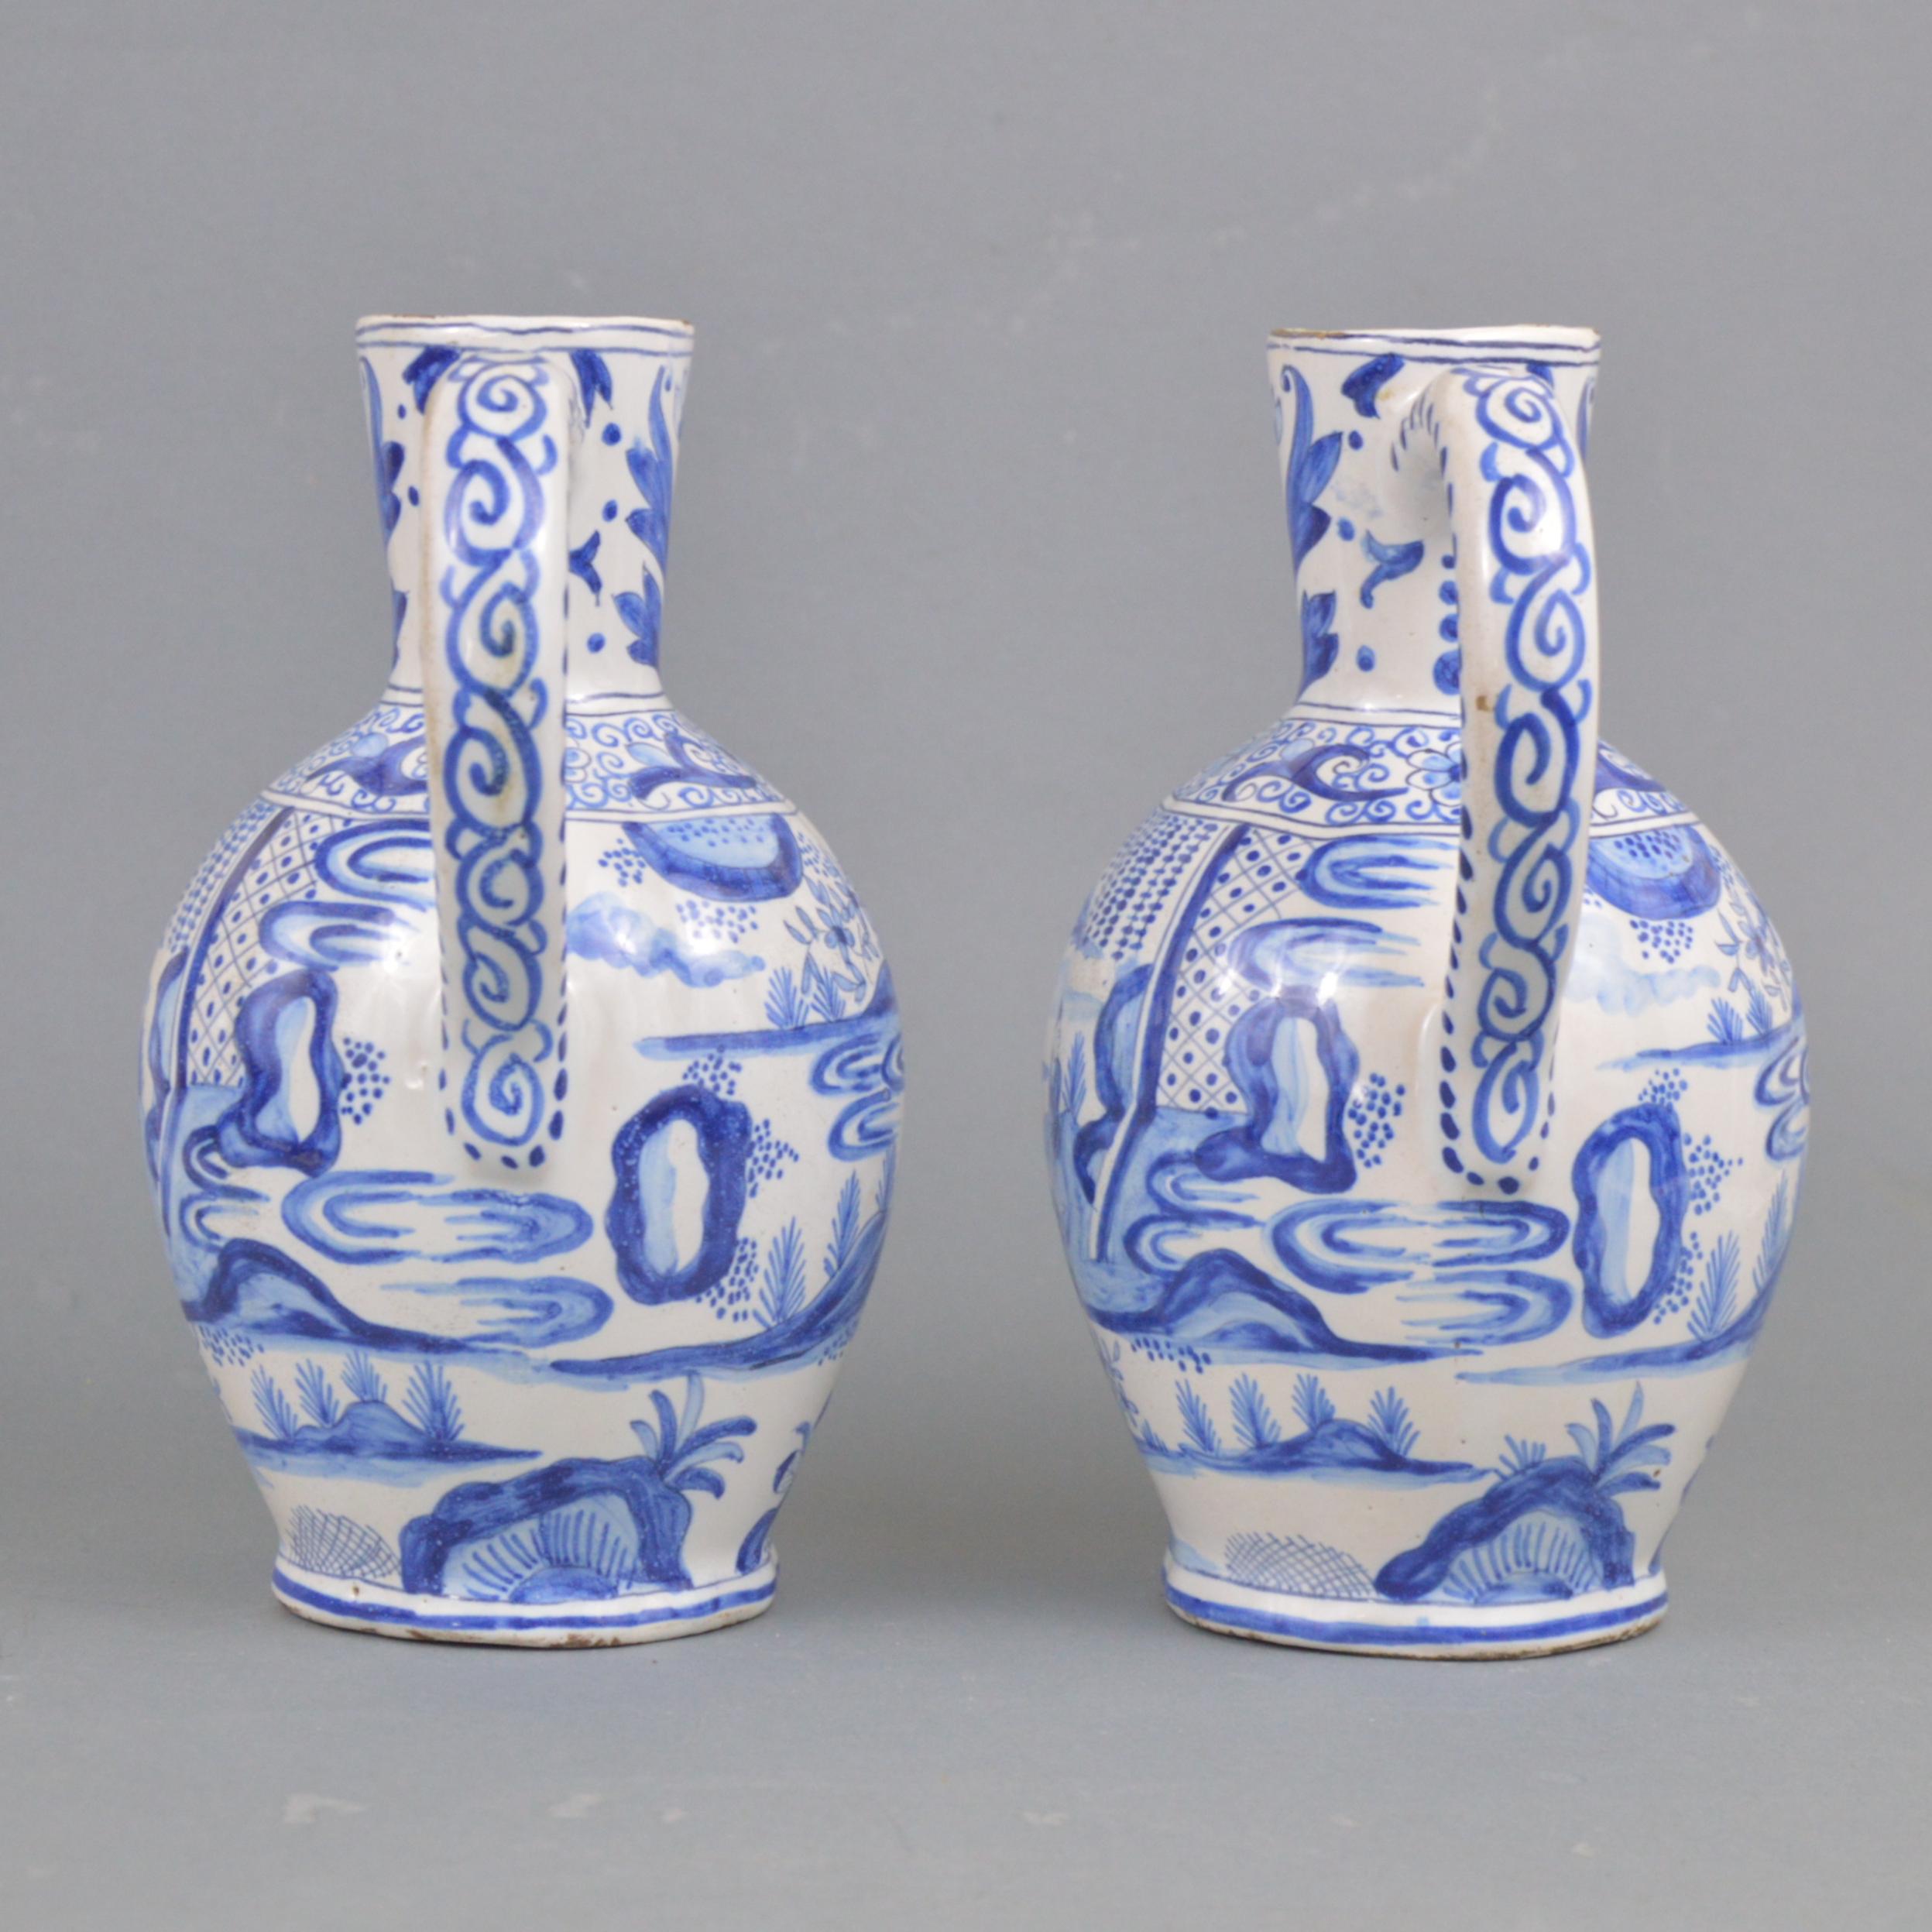 Paar Delfter Zinnkrüge aus dem 19. Jahrhundert mit kobaltblauem Unterglasurdekor und Chinoiserie.
LFK (L'Aiguière) Delft-Marke.